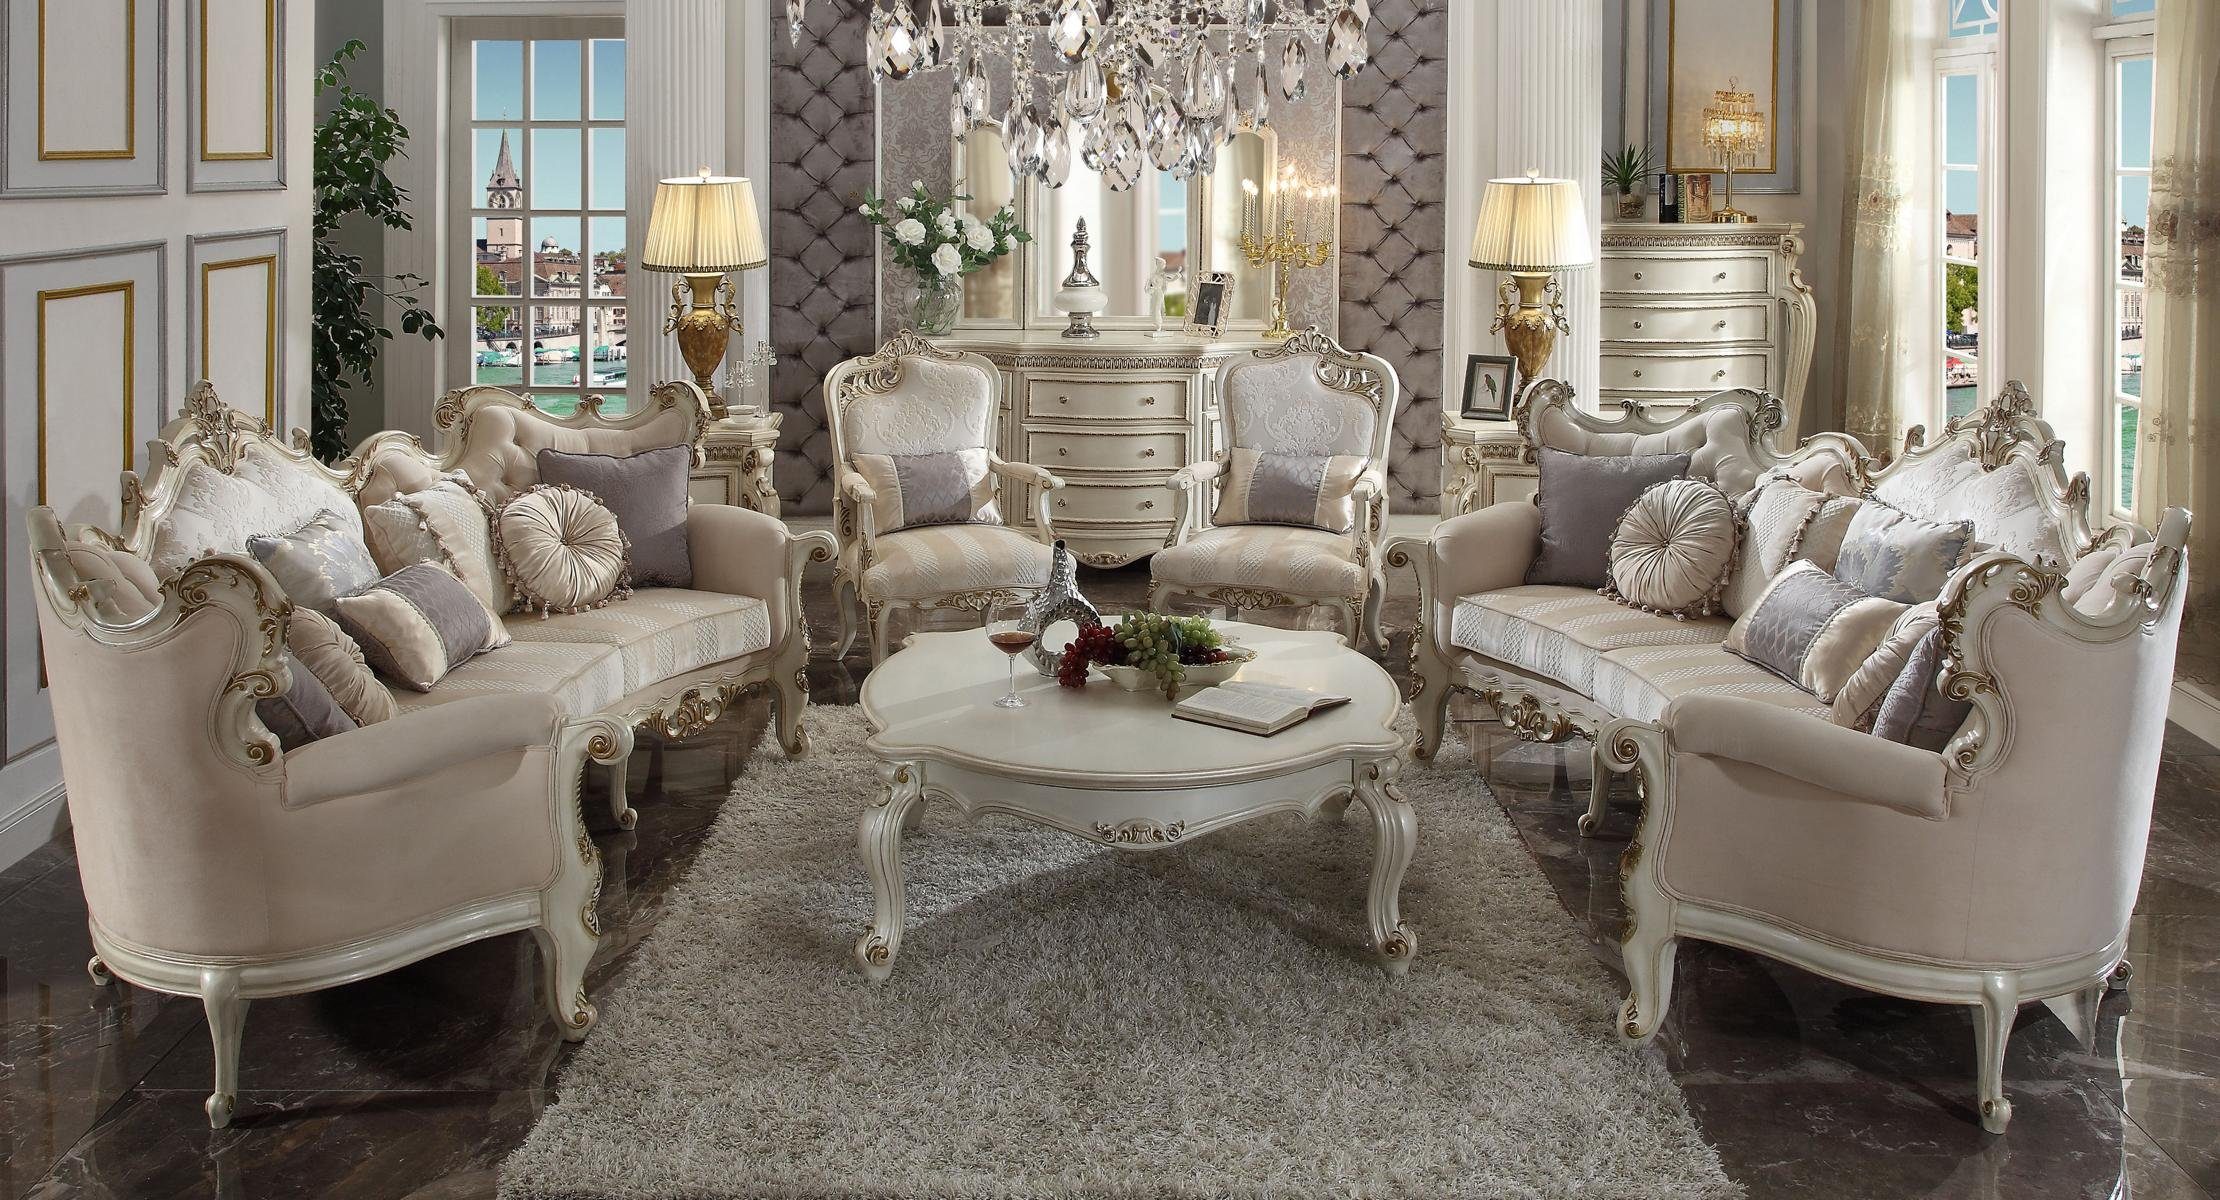 JVmoebel Wohnzimmer-Set, Luxus Möbel Sofagarnitur Couch Sofa Polster 4+4+1+1 Sitzer | Wohnwände